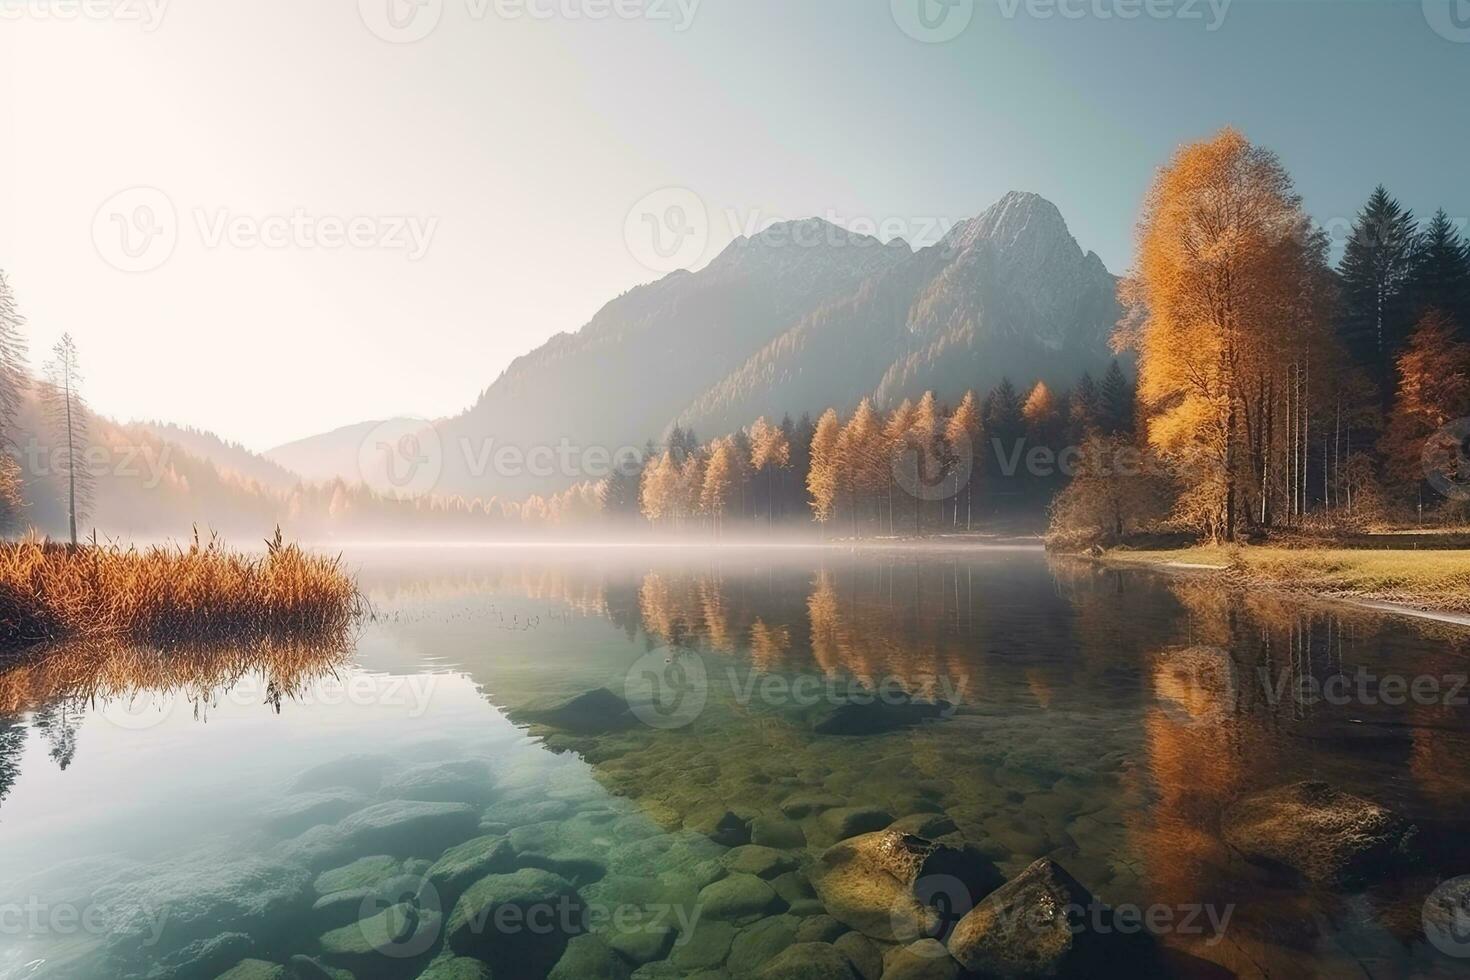 Fantastisch Herbst Aussicht von blutete See. Beliebt Reise Ziel im Slowenien, Europa. Schönheit Welt. foto